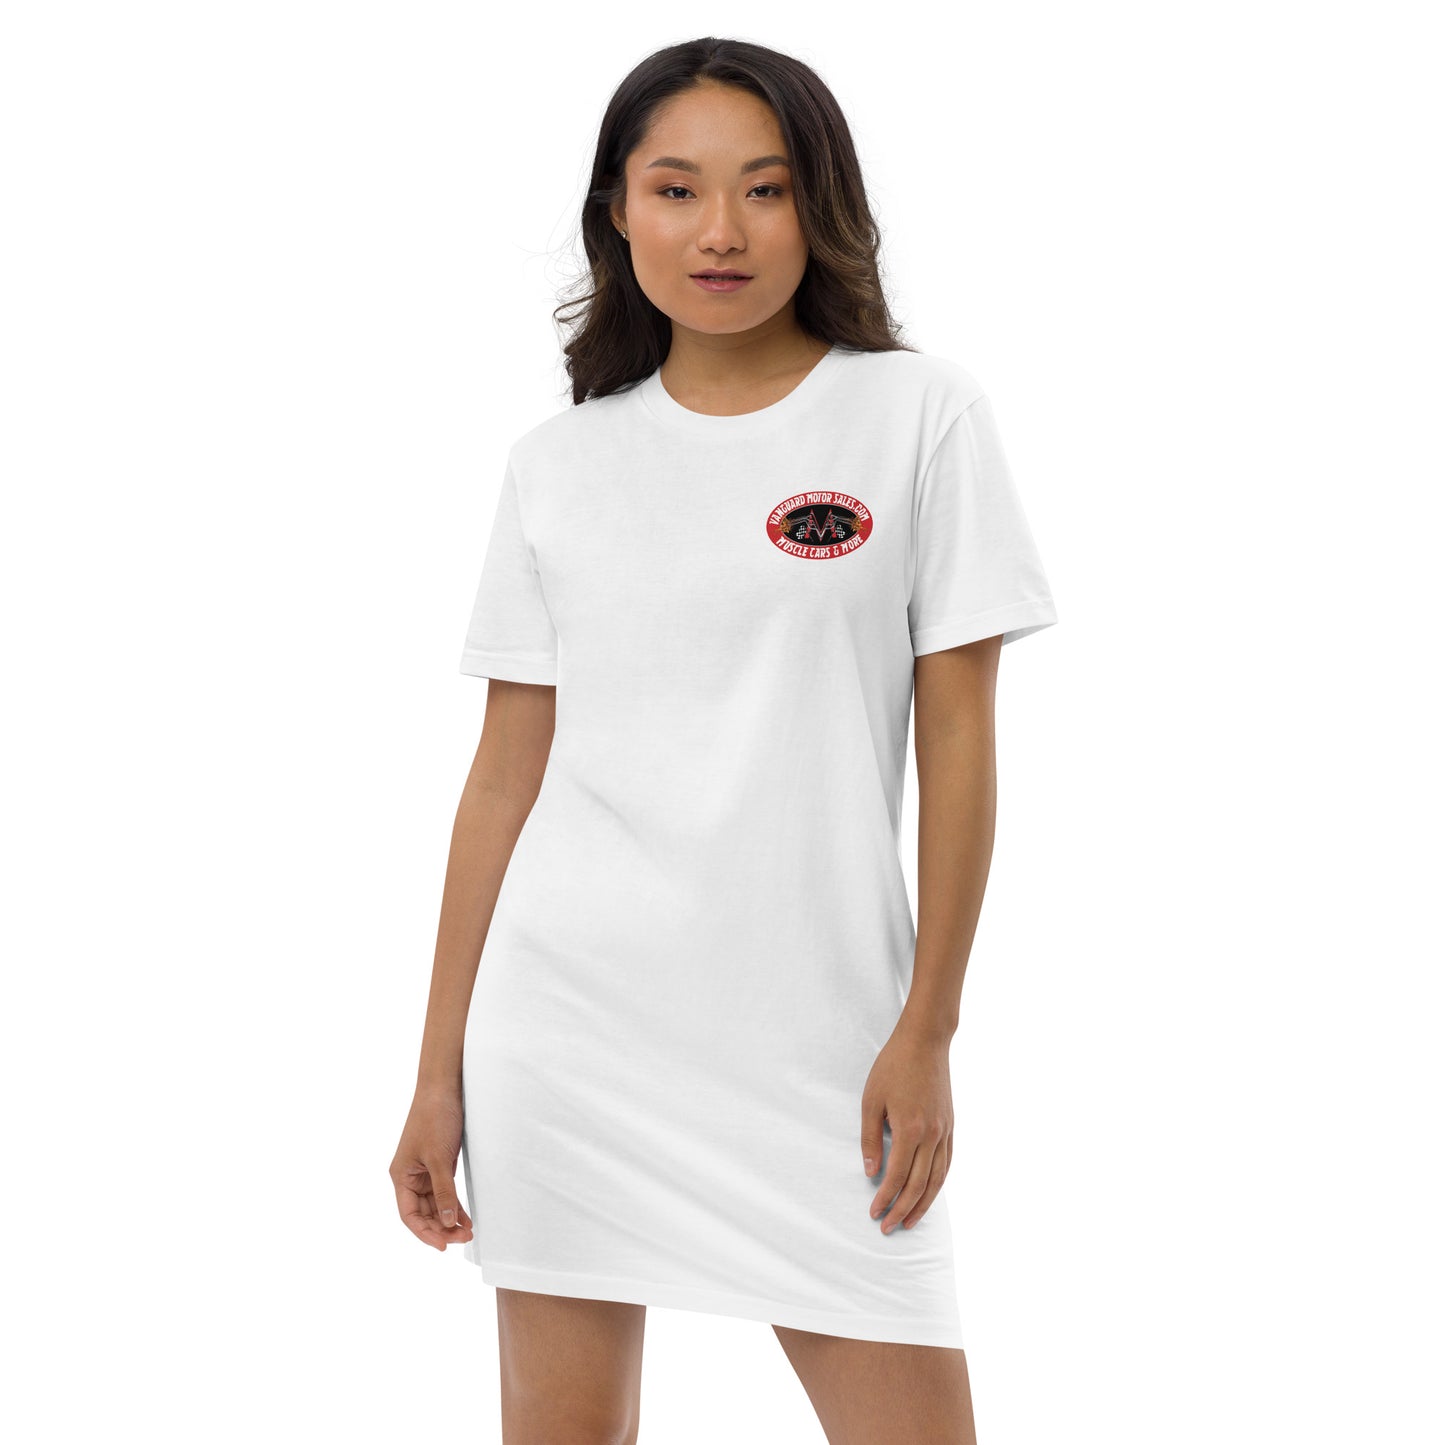 T-Shirt Dress